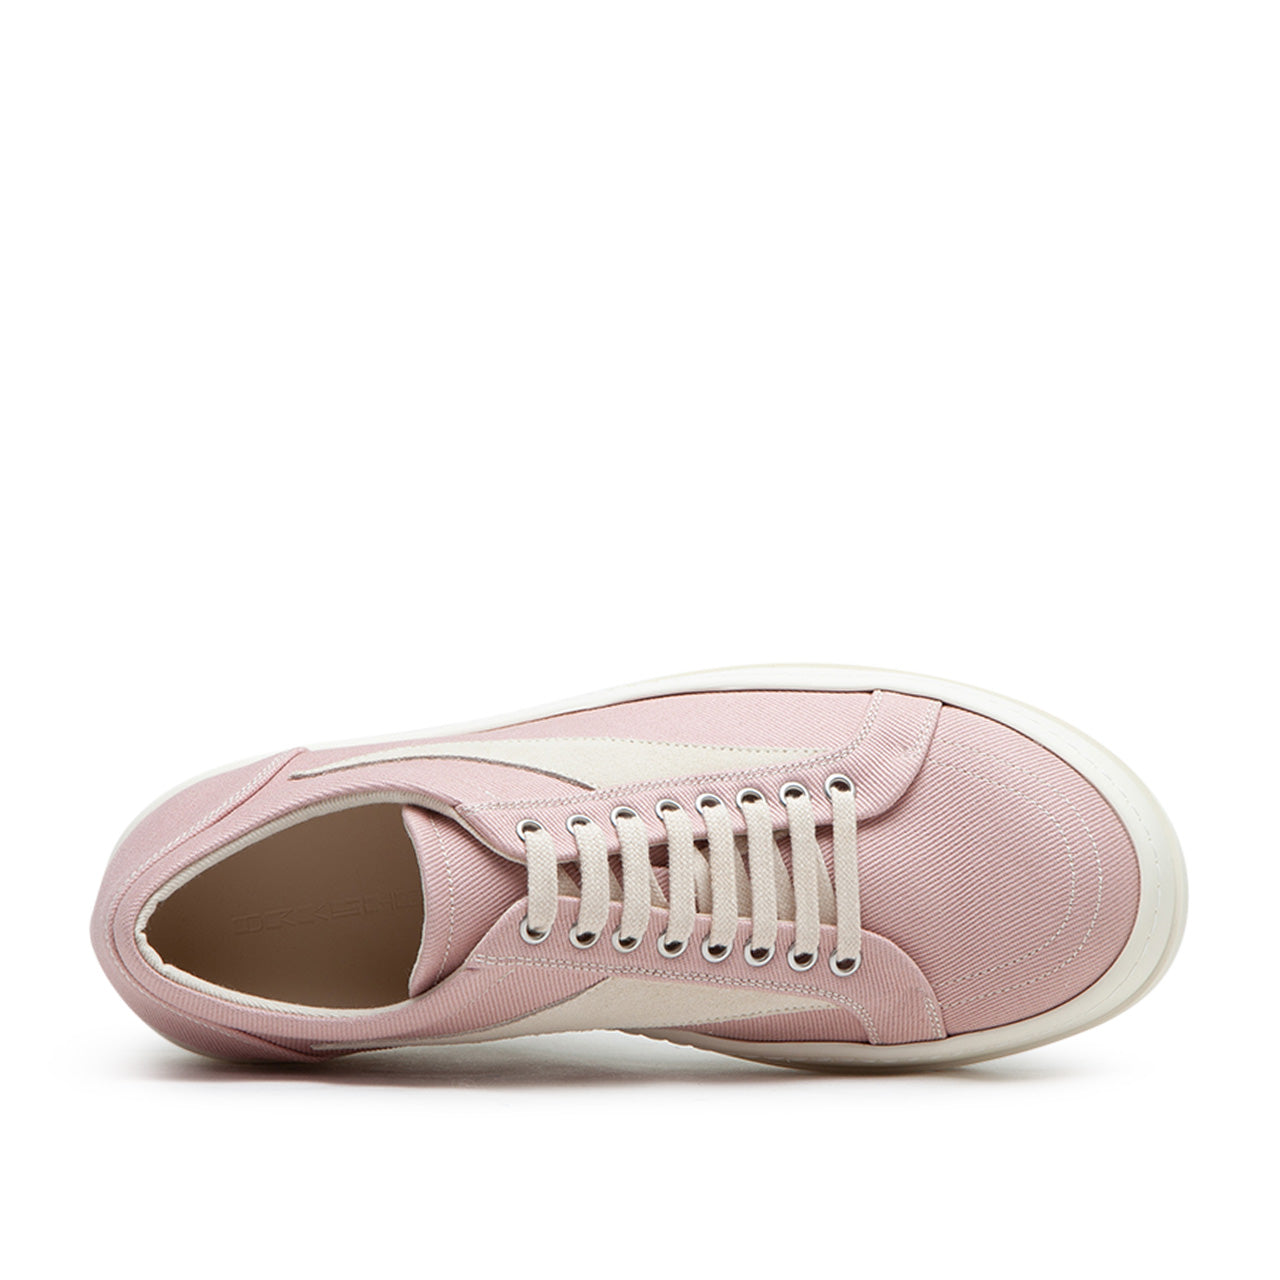 rick owens drkshdw scarpe in denim vintage sneaks (faded pink / pearl / milk)